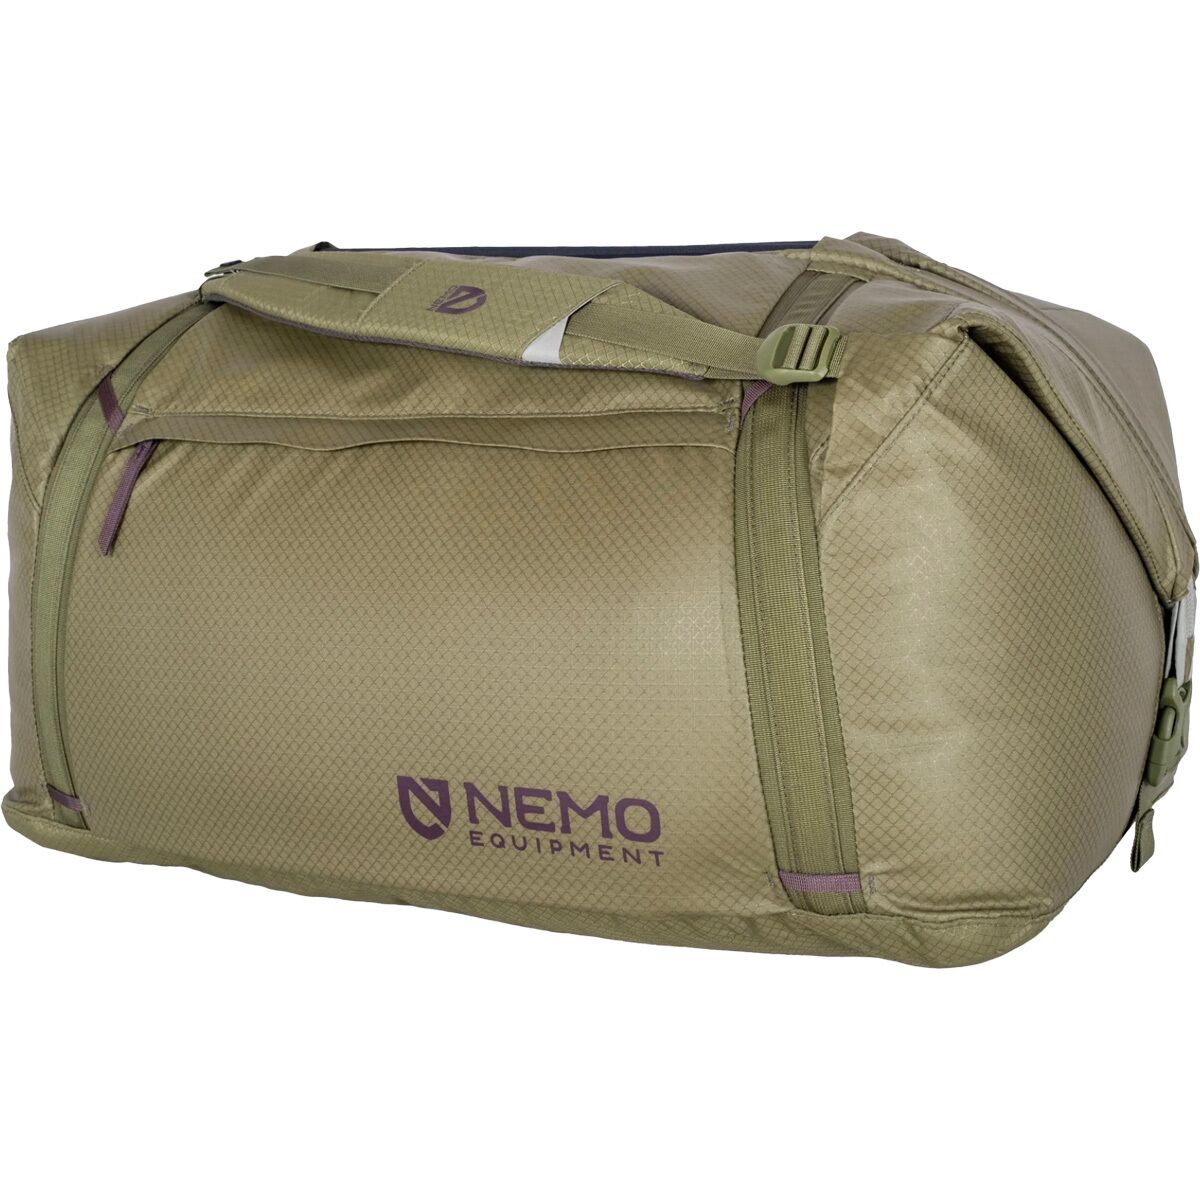 цена Двойная трансформируемая спортивная сумка объемом 100 л Nemo Equipment Inc., цвет nova